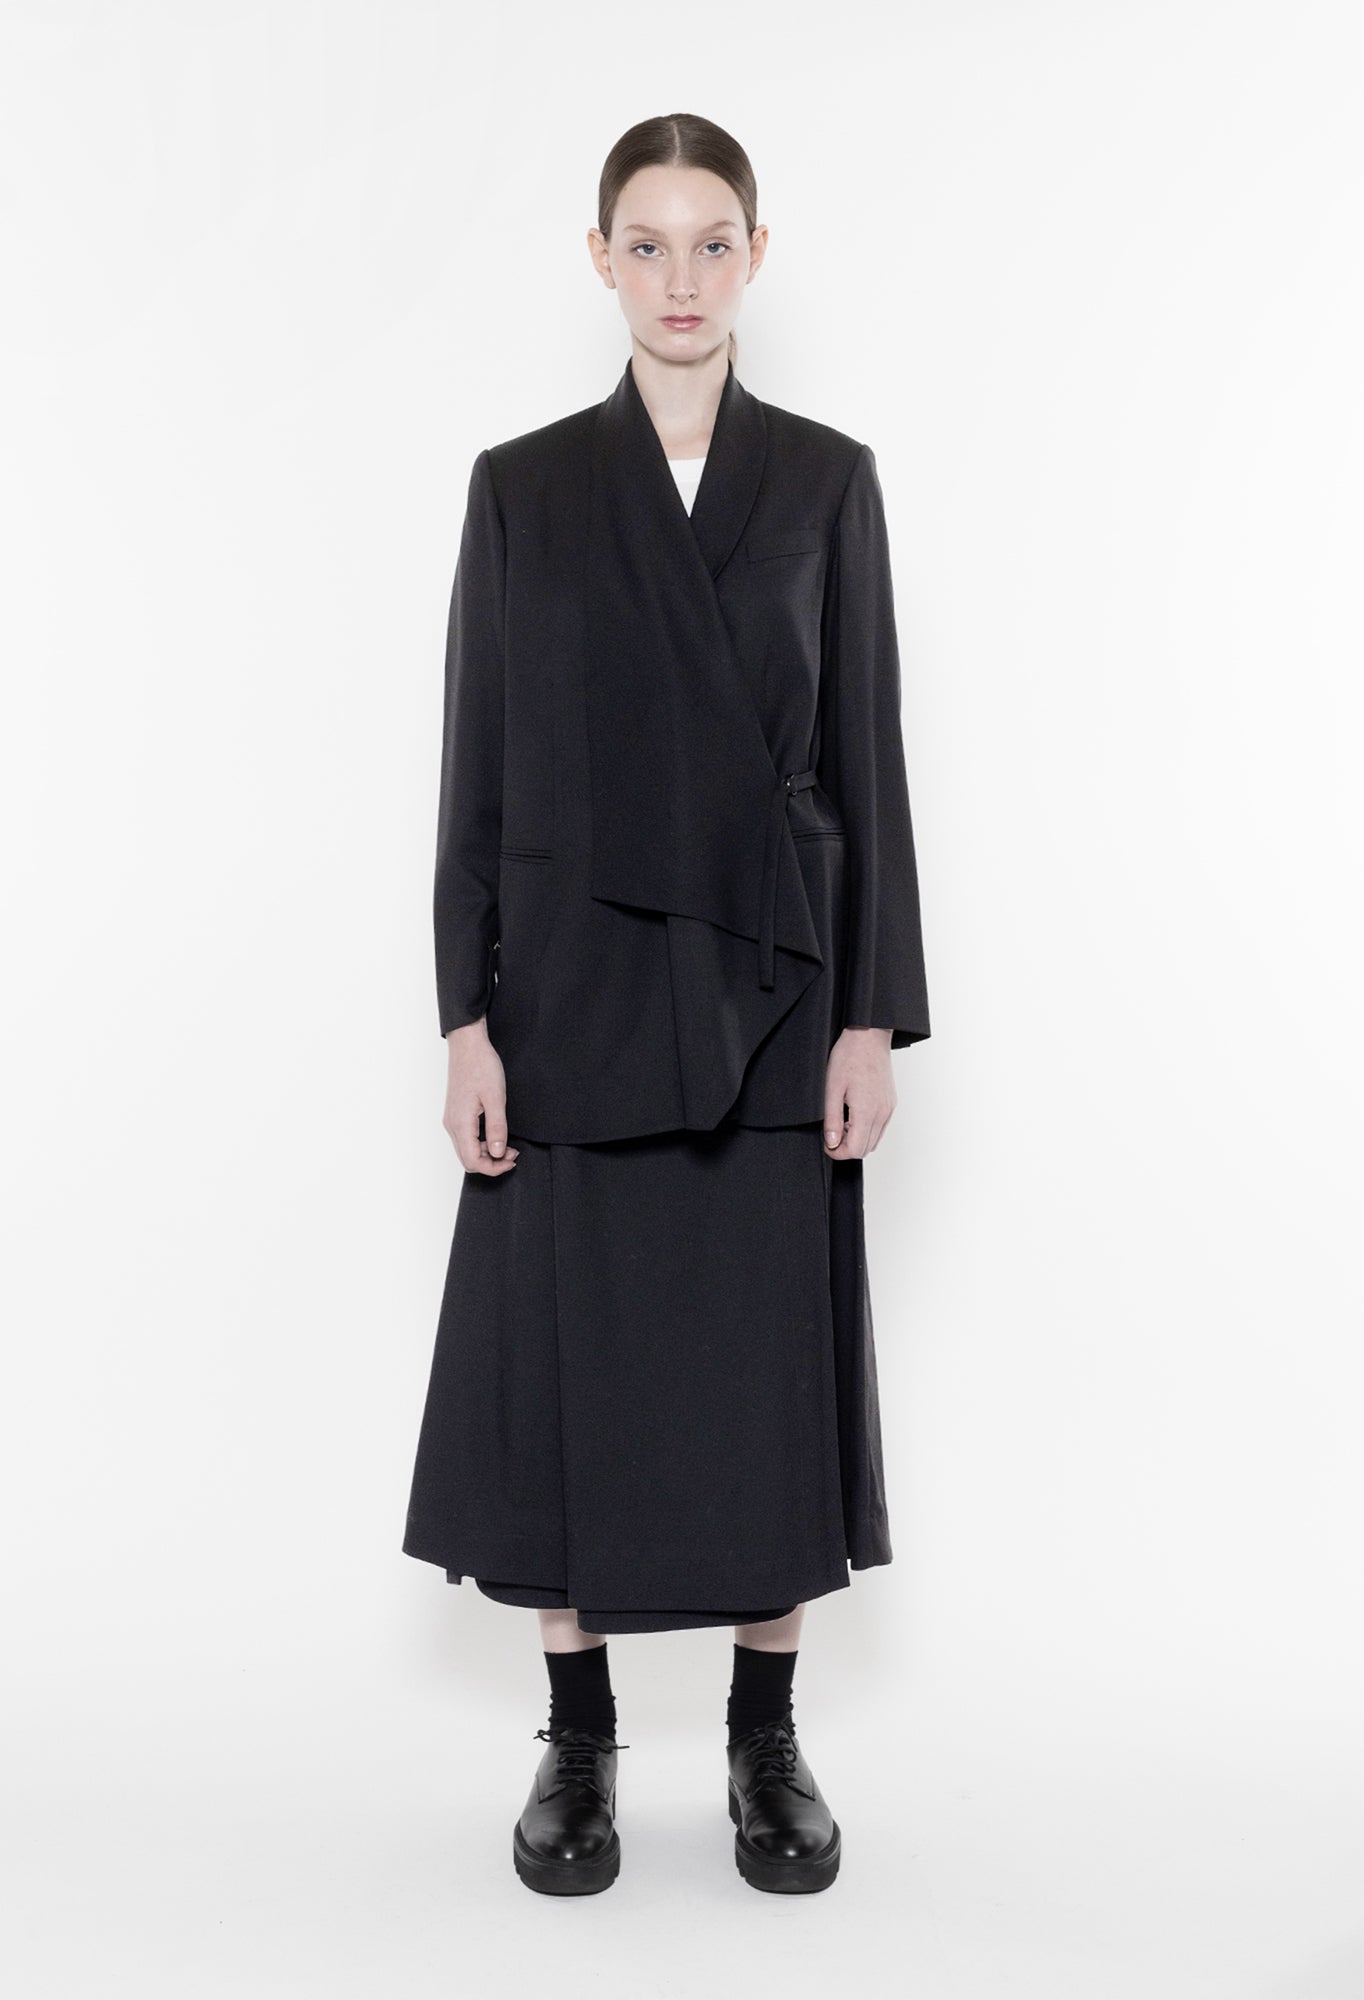 WENDELLY - Wool Gabardine Skirt in Black